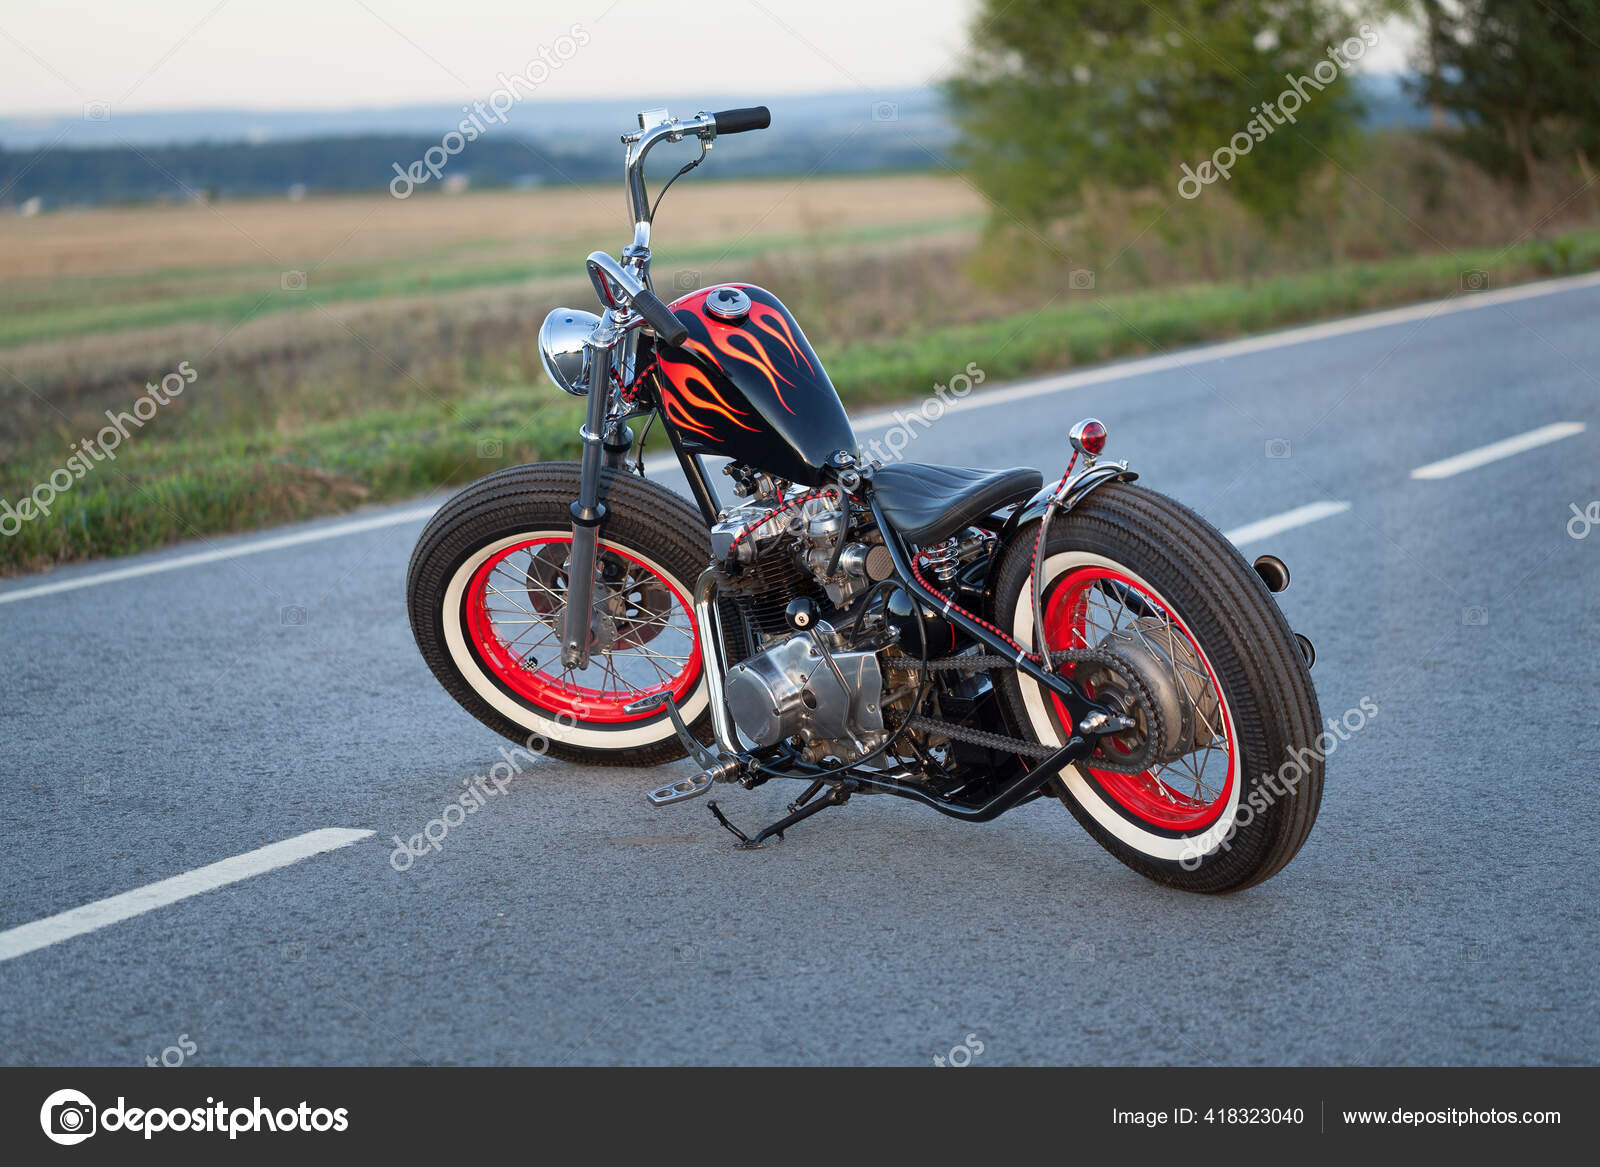 Custom bobber motorbike standing on a road. — Stock Photo © Stramyk  #418323040